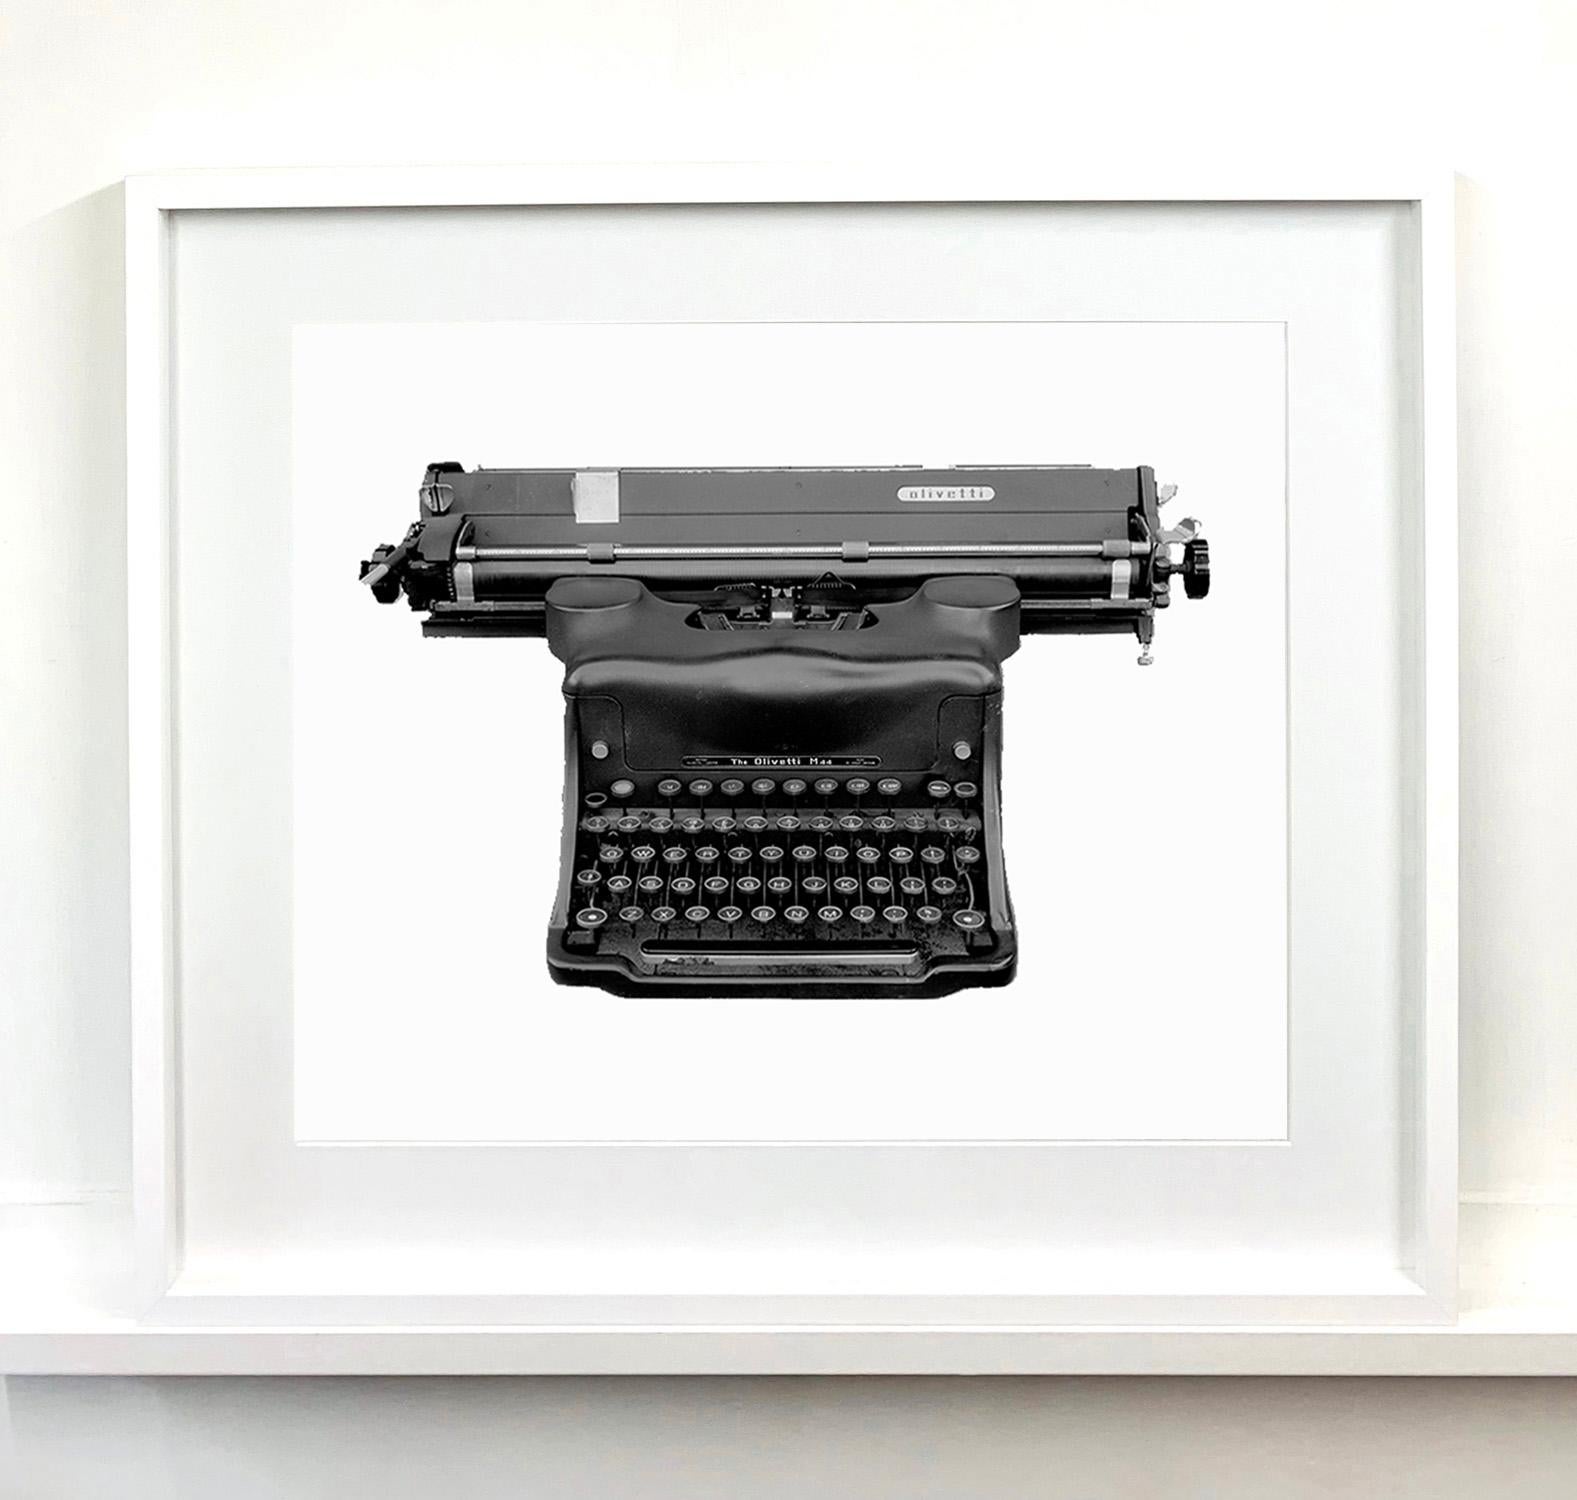 La nature morte de Samuel Field, représentant une machine à écrire Olivetti, gagne en profondeur grâce au procédé orthochromatique qu'il a utilisé. Isolé en monochrome, vous appréciez les détails de cet objet utilitaire vintage. 

Cette œuvre d'art